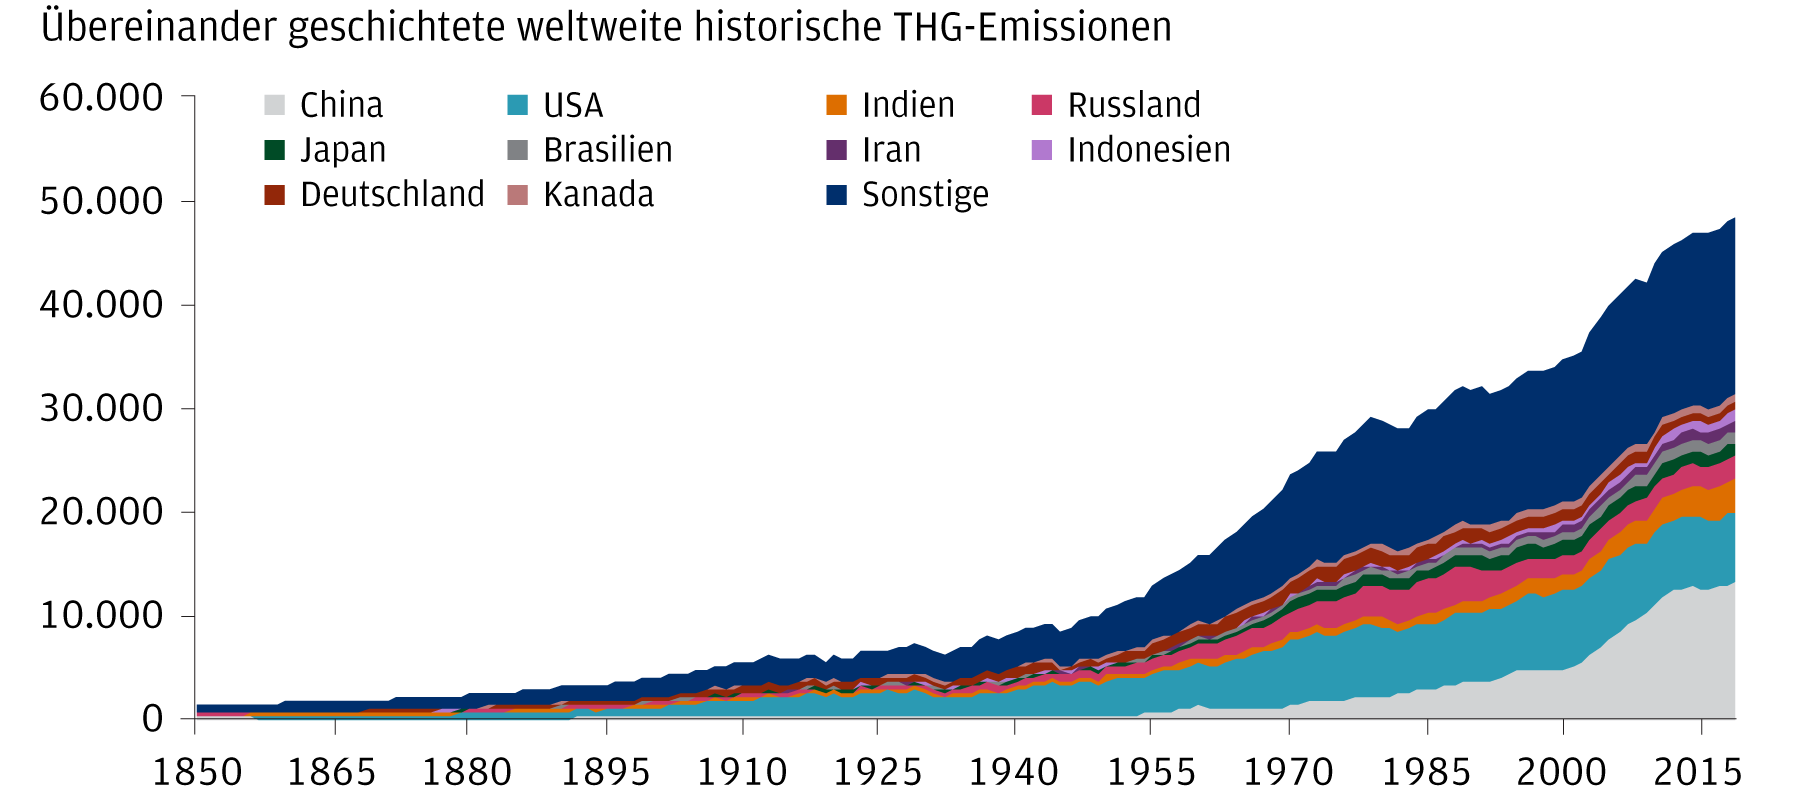 Dieses Diagramm zeigt die übereinander geschichteten weltweiten THG-Emissionen seit 1850. Es zeigt den Anstieg der Treibhausgasemissionen gegenüber dem vorindustriellen Niveau. China und die USA sind mit einem Drittel der weltweiten Emissionen im Jahr 2022 zwei der größten Verursacher. Diese Daten zeigen keine Anzeichen einer Verlangsamung.